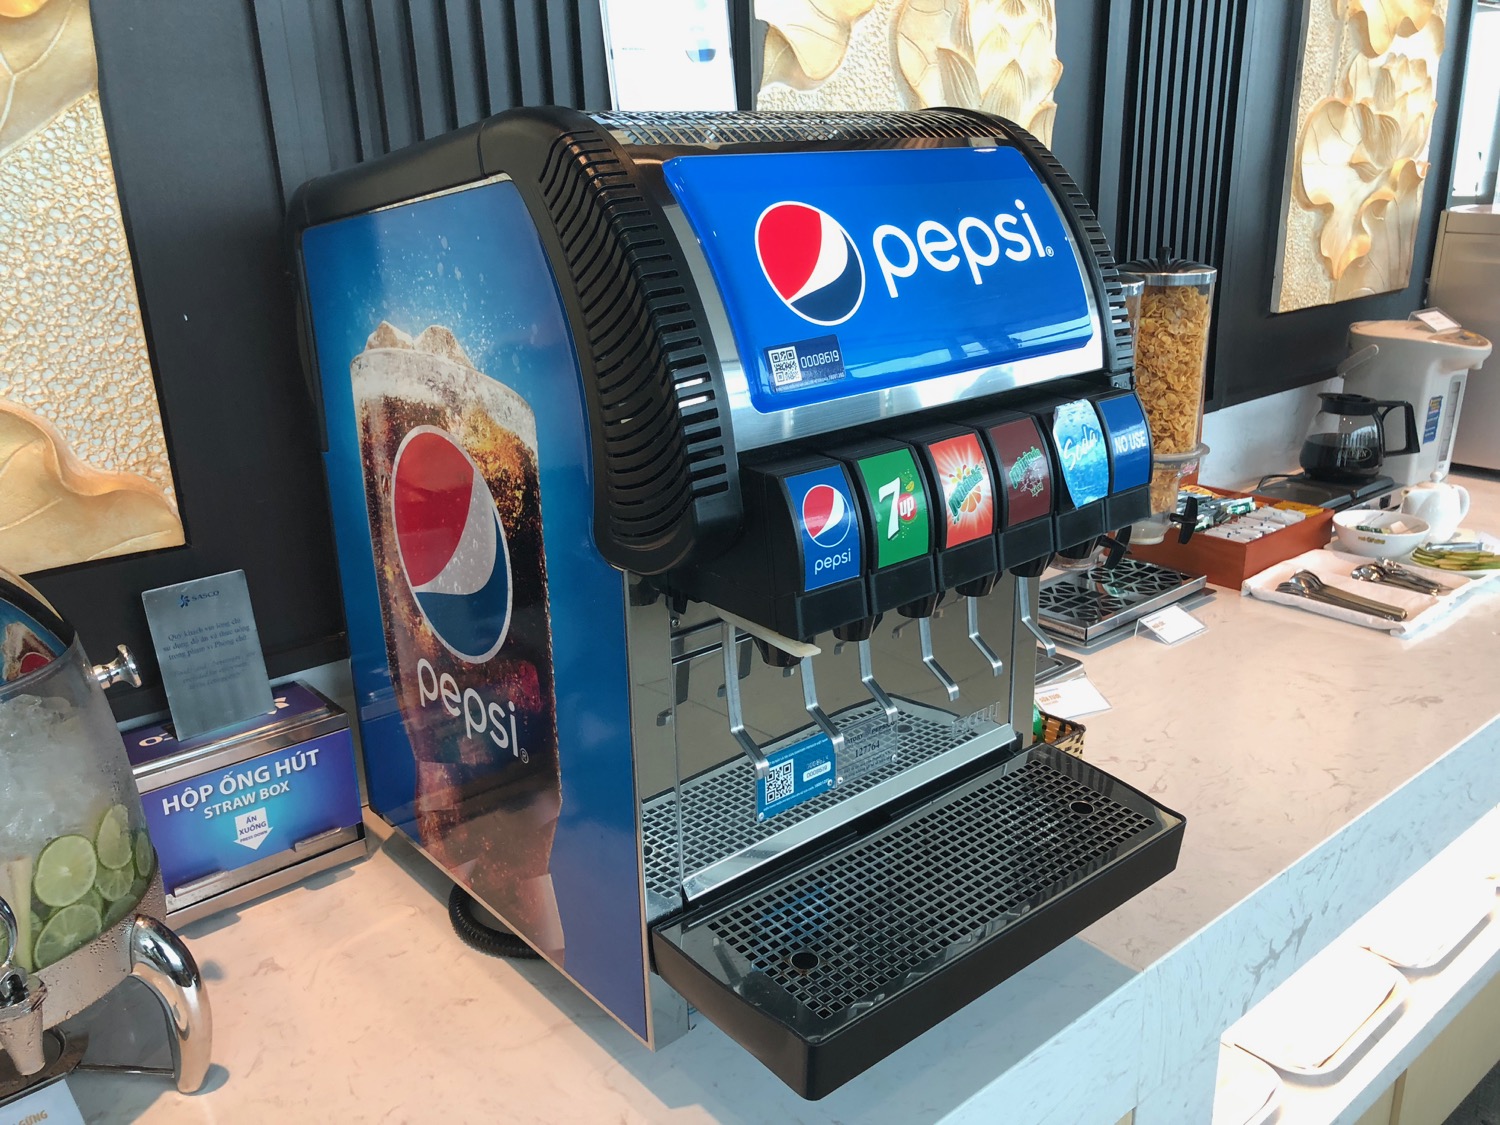 a soda dispenser on a counter